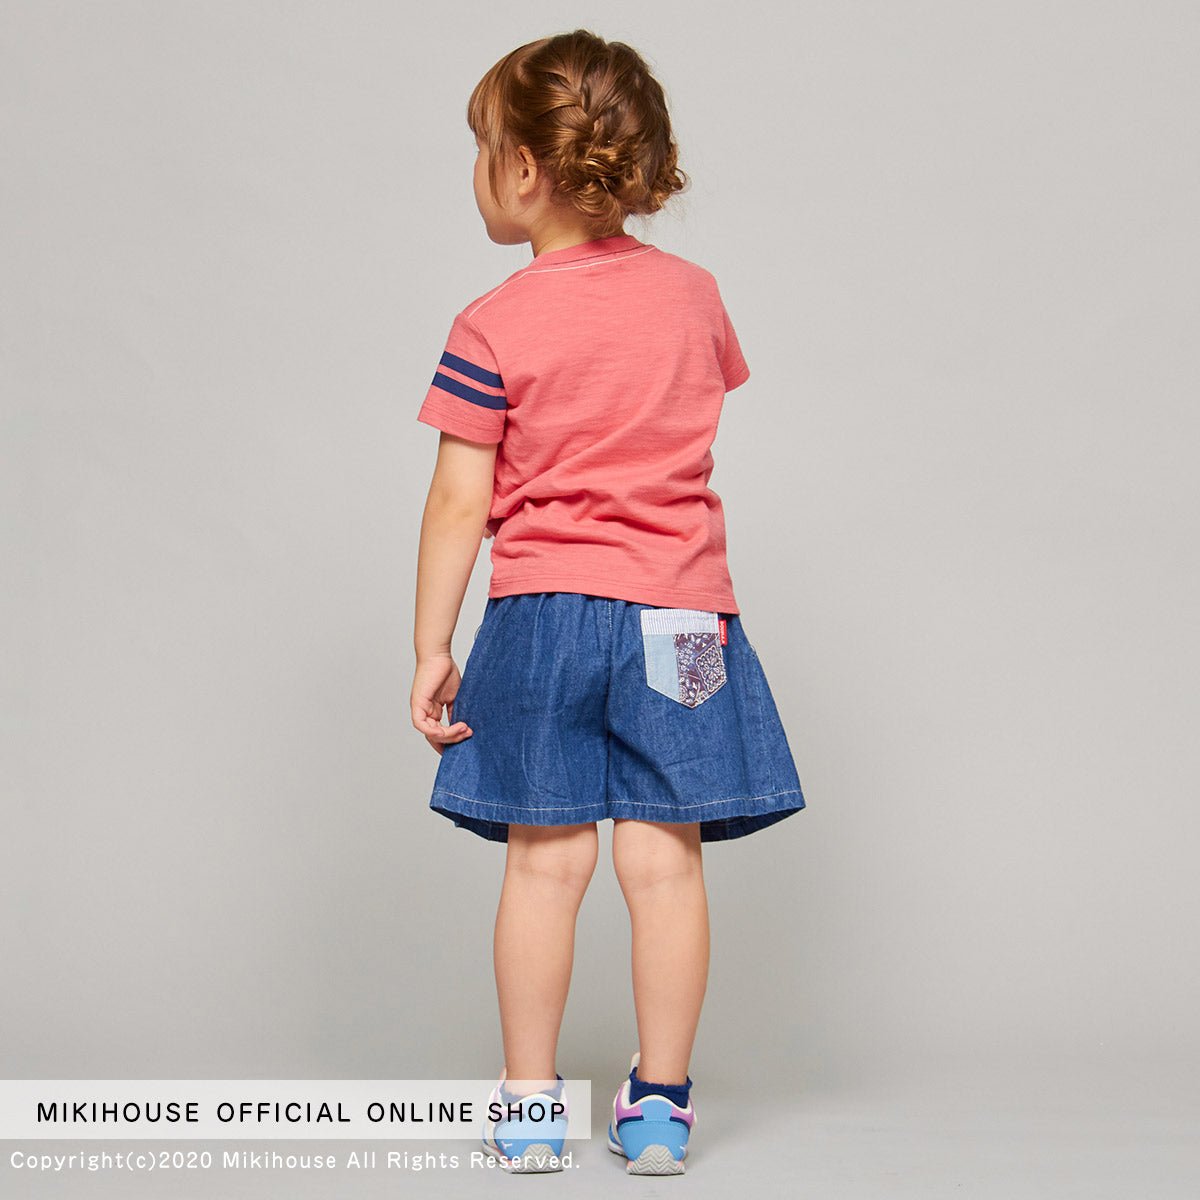 MIKI HOUSE & Mizuno Shoes for Kids - 61-9402-826-15-16